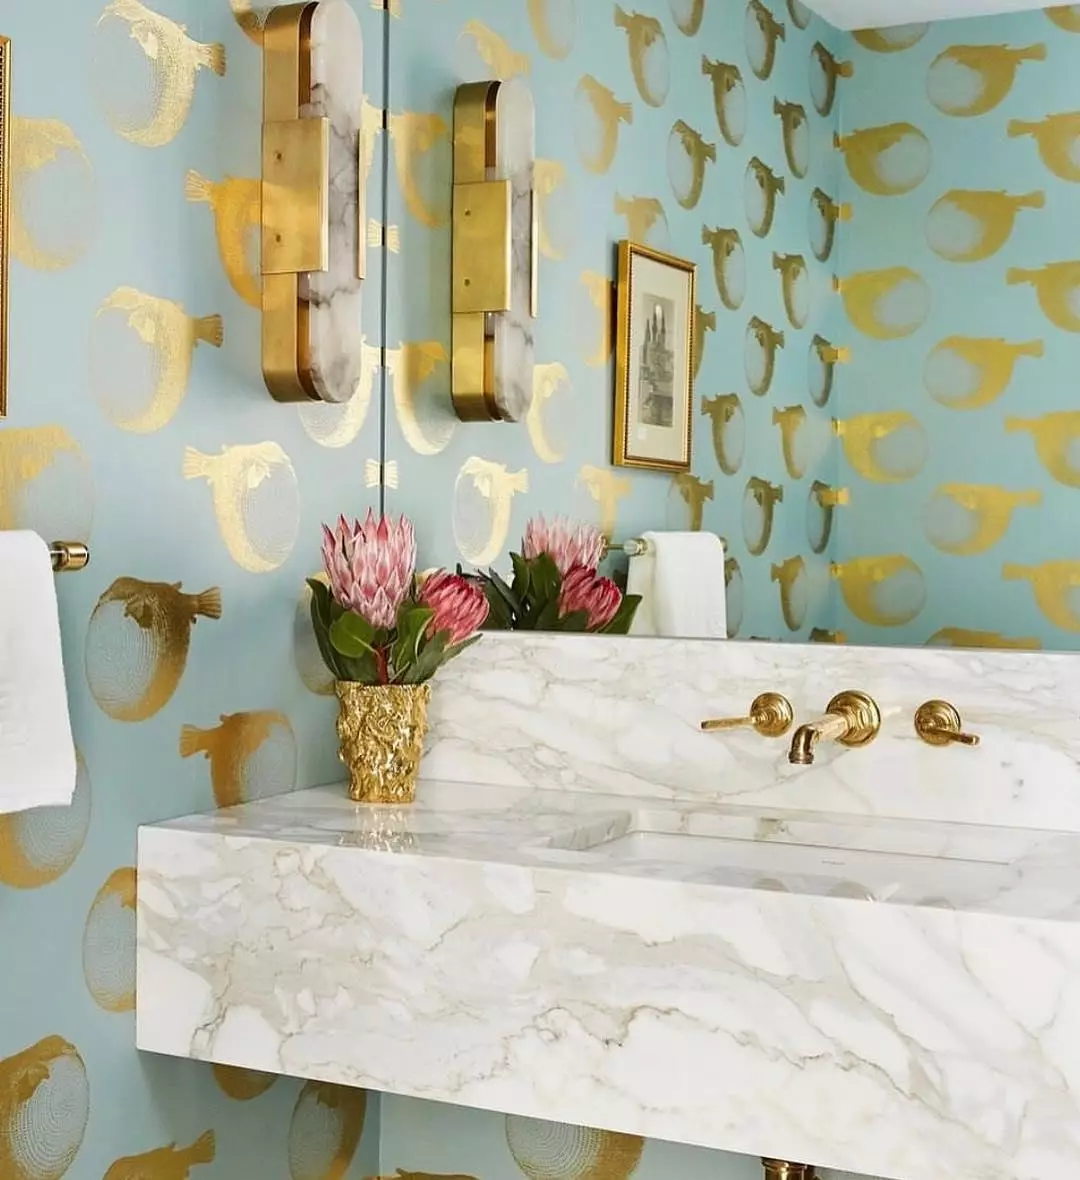 壁紙與金色浮雕在浴室裡